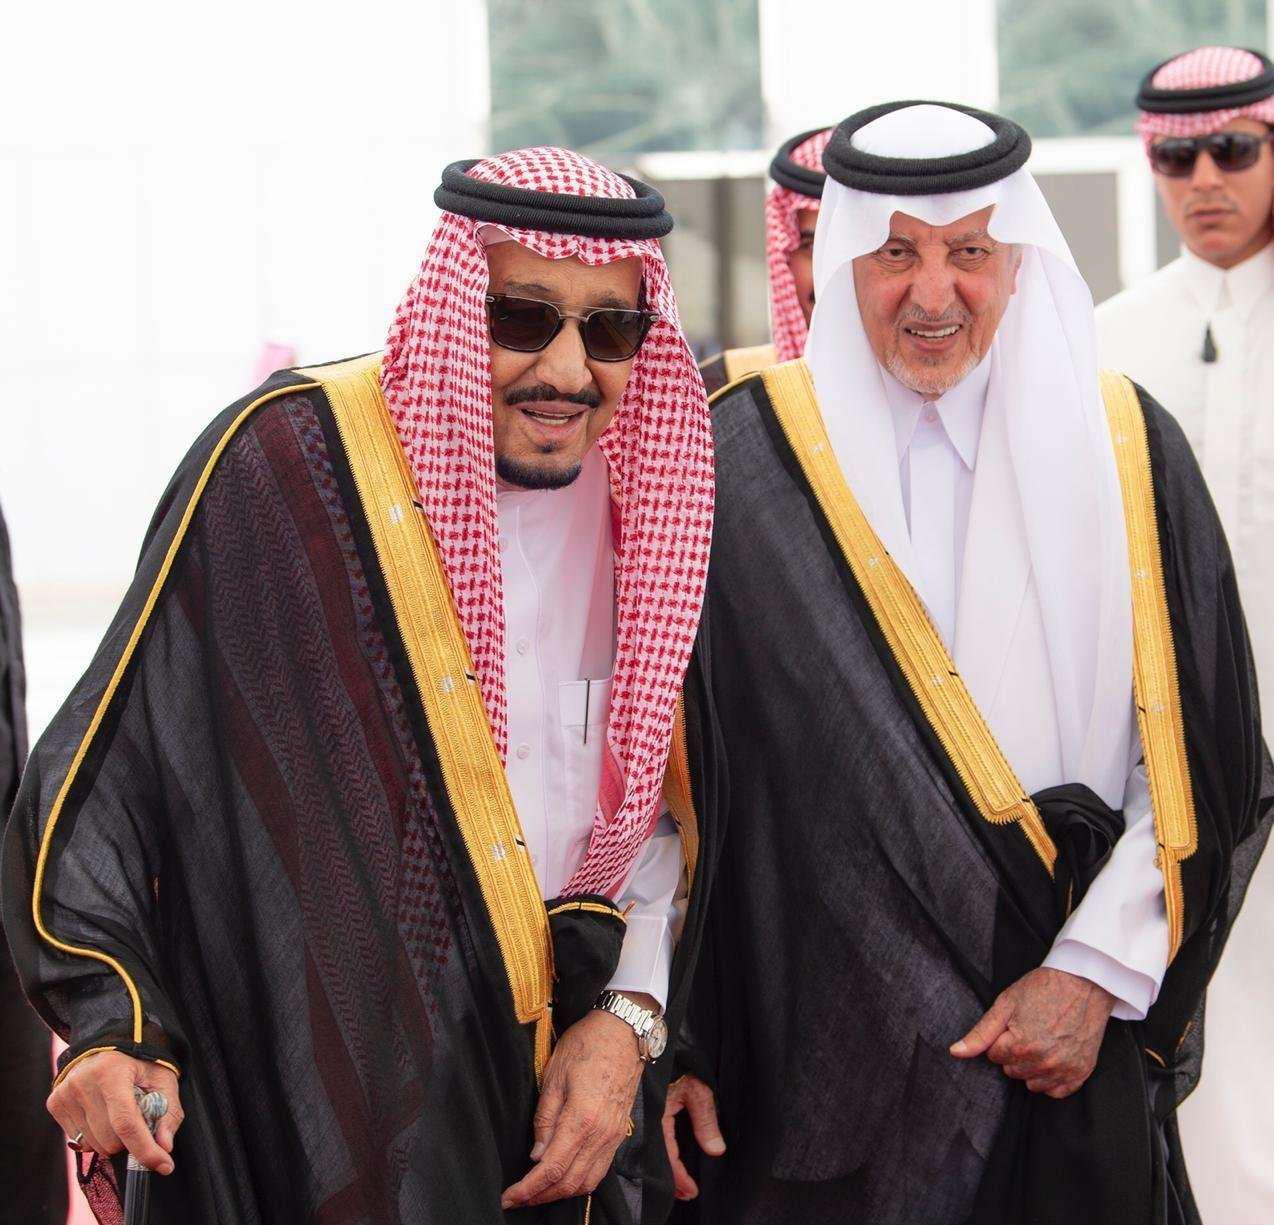 العاهل السعودي الملك سلمان بن عبدالعزيز ال سعود